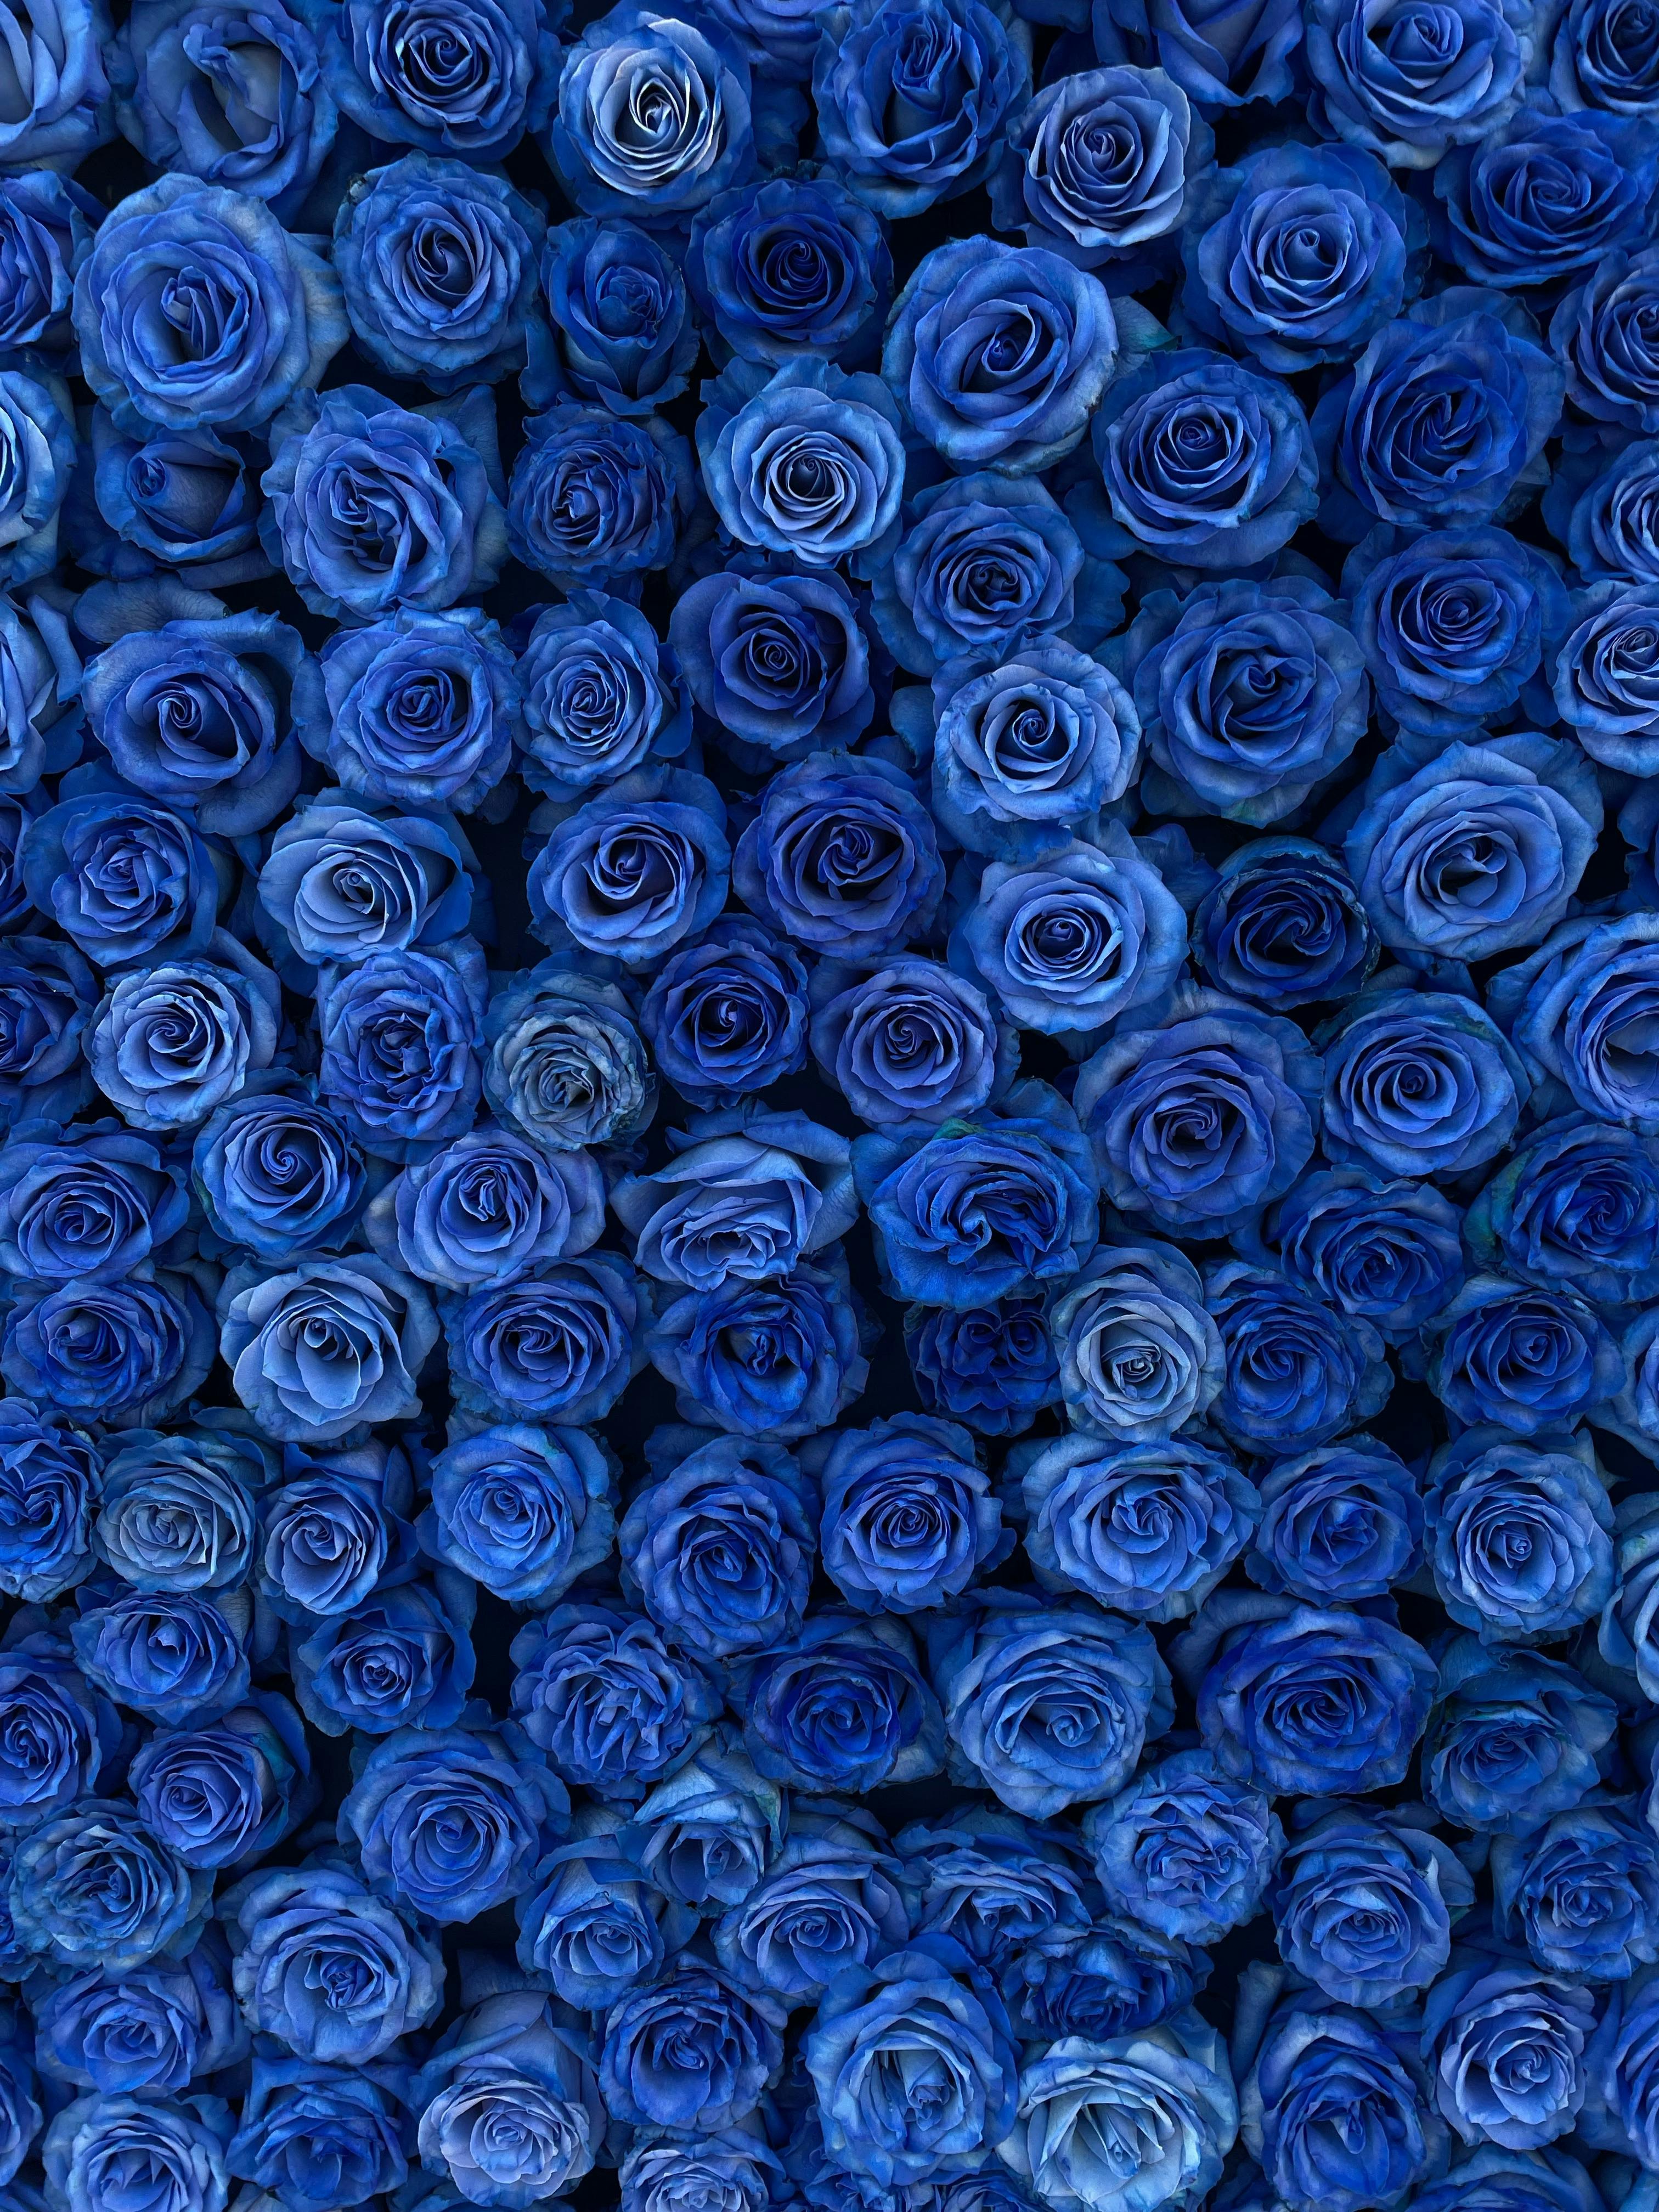 Hình ảnh hoa hồng xanh: Hoa hồng xanh là một sản phẩm của nghệ thuật tuyệt vời và bản sắc riêng biệt của mỗi loài hoa. Hình ảnh hoa hồng xanh sẽ đem đến cho bạn sự tươi mới, sự độc đáo và sức sống mãnh liệt của loài hoa này. Hãy xem ngay để cảm nhận nguồn năng lượng của hình ảnh này.